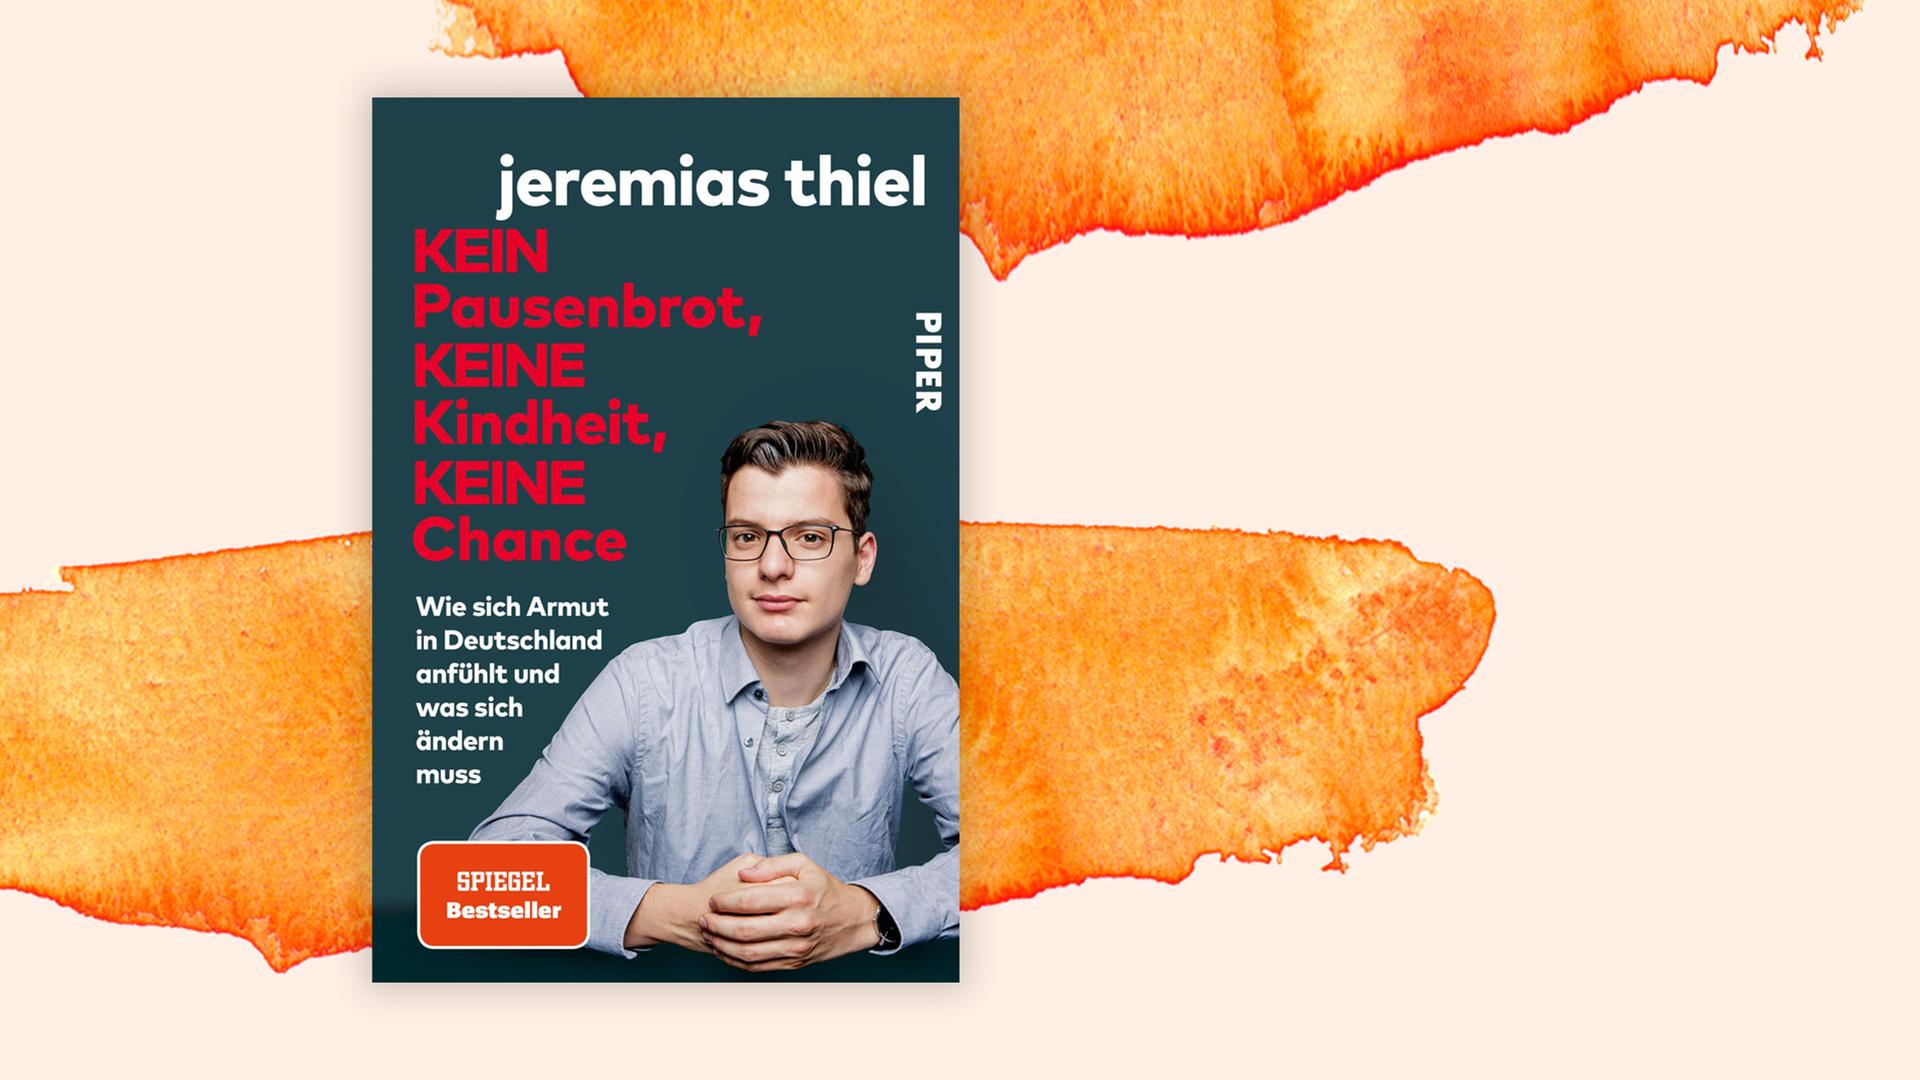 Buchcover zu Jeremias Thiel: "Kein Pausenbrot, keine Kindheit, keine Chance"